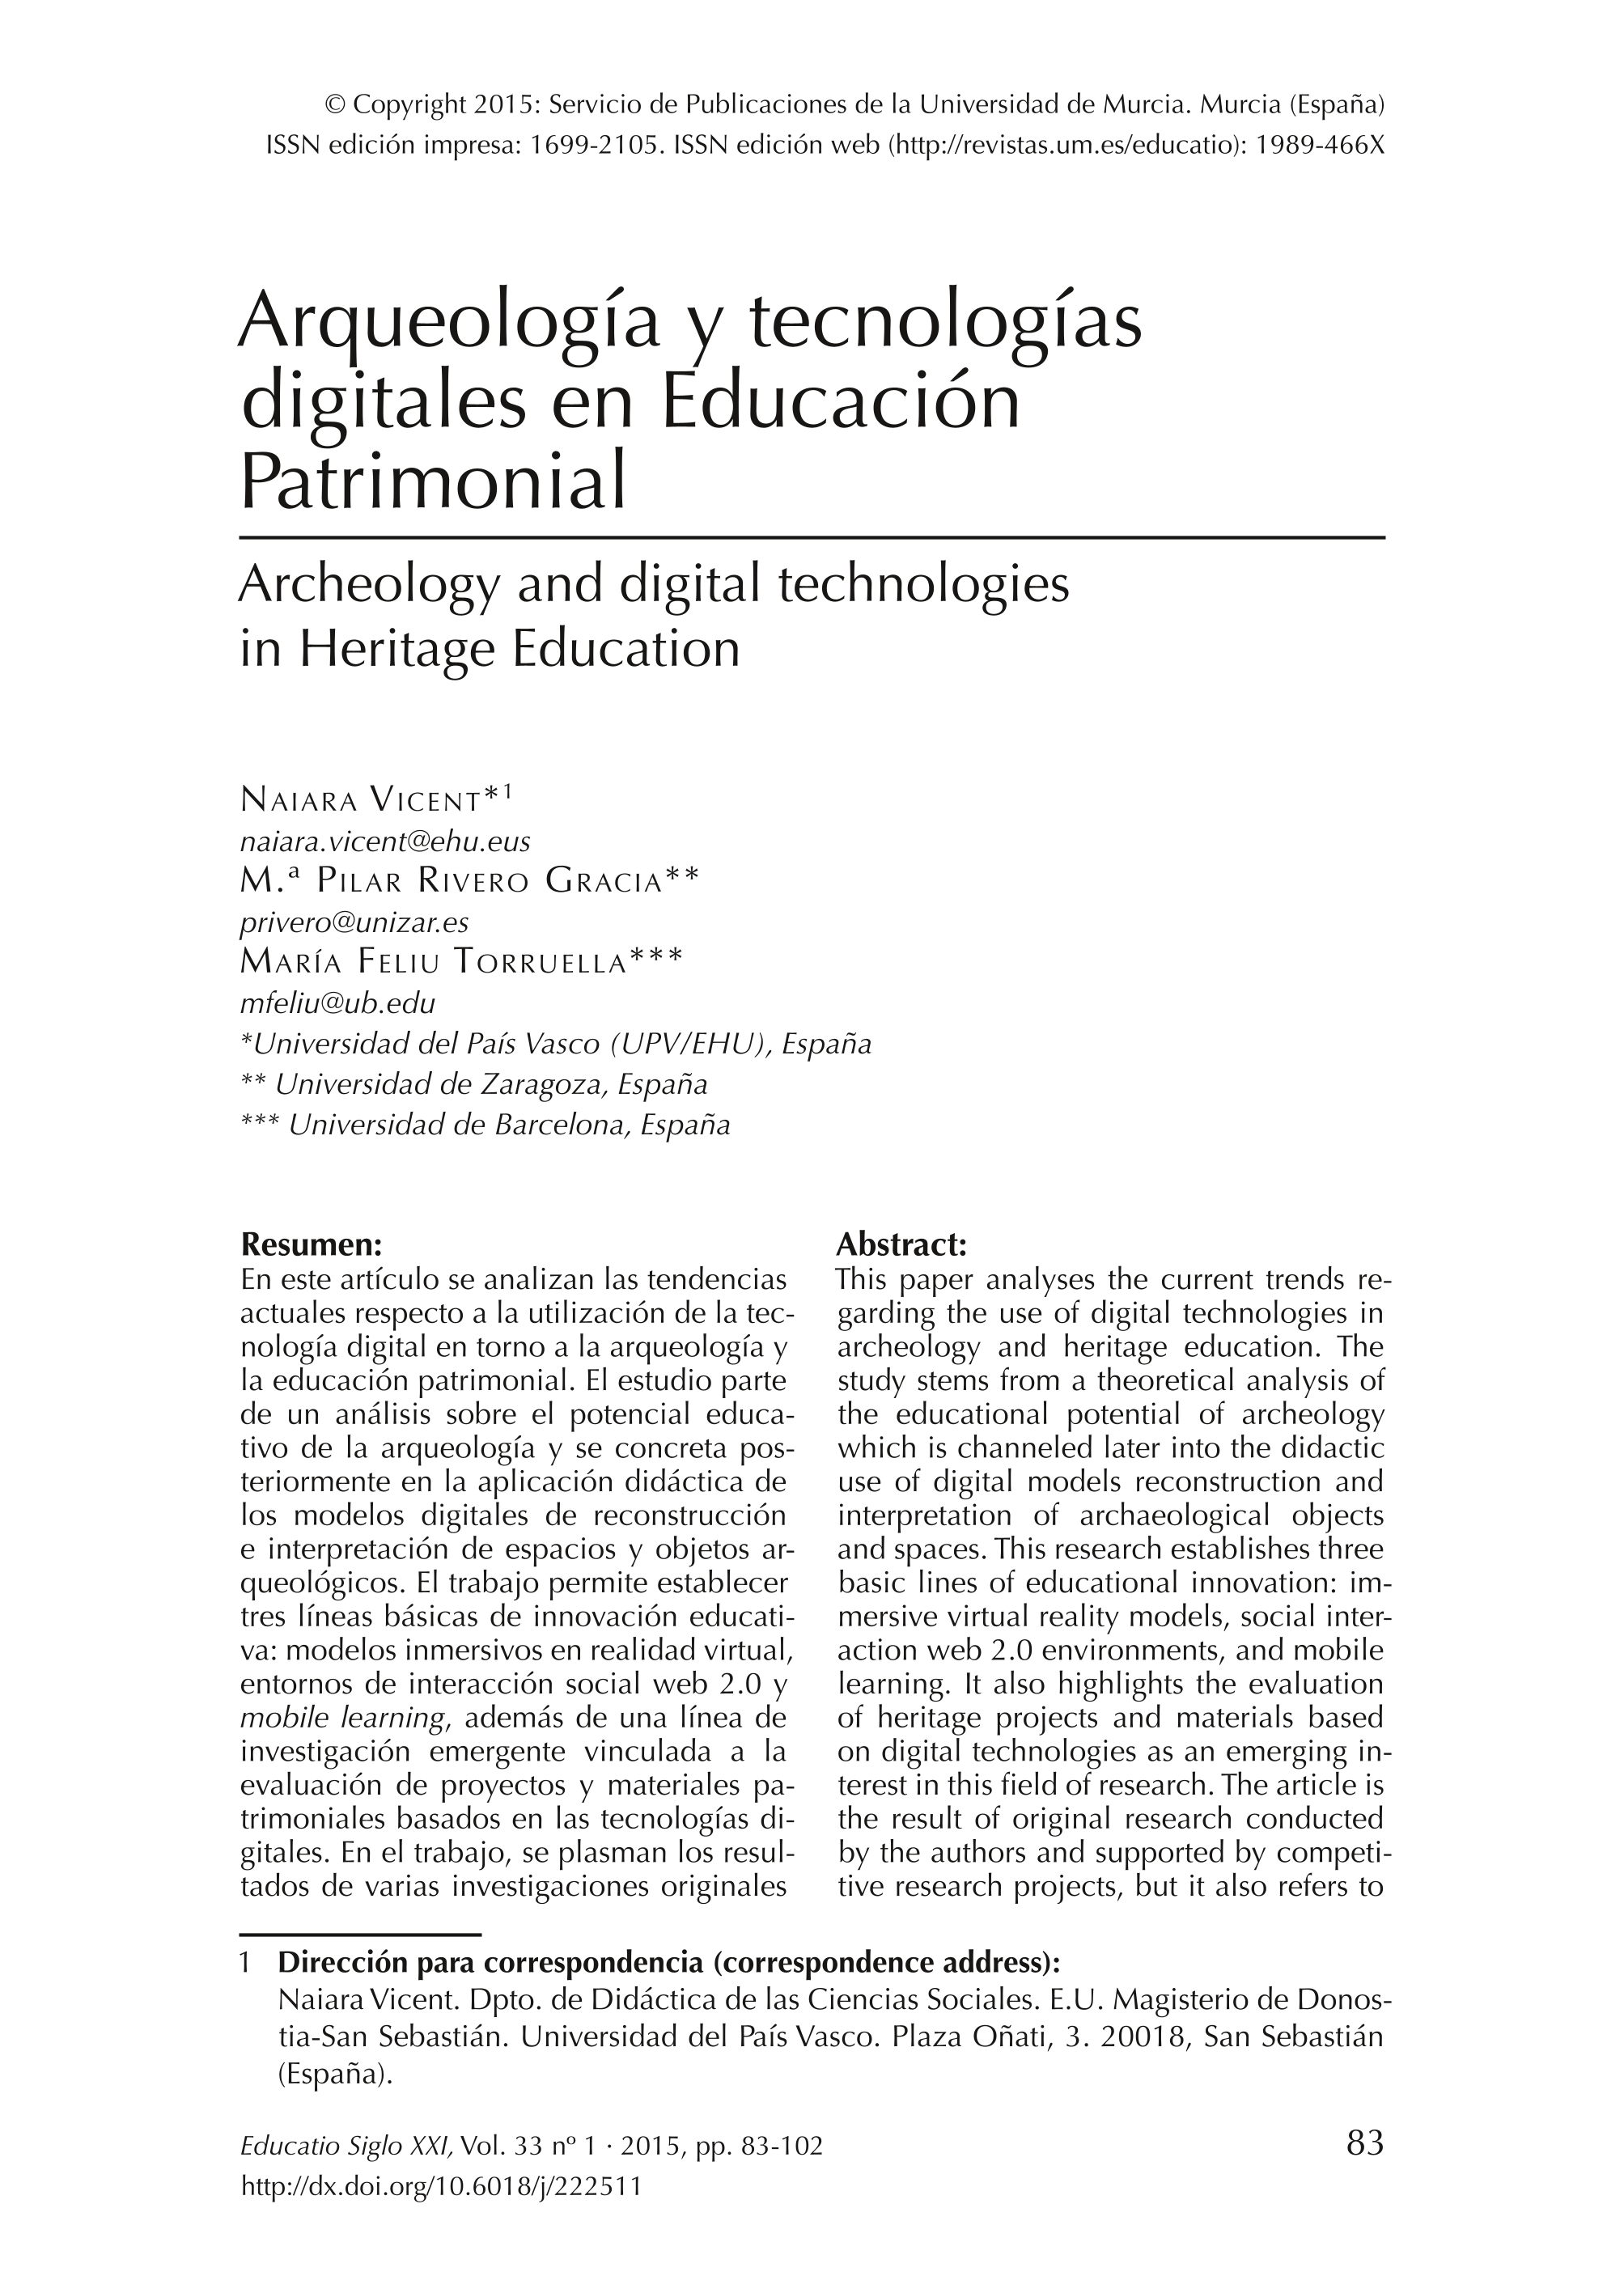 Arqueología y tecnologías digitales en Educación Patrimonial